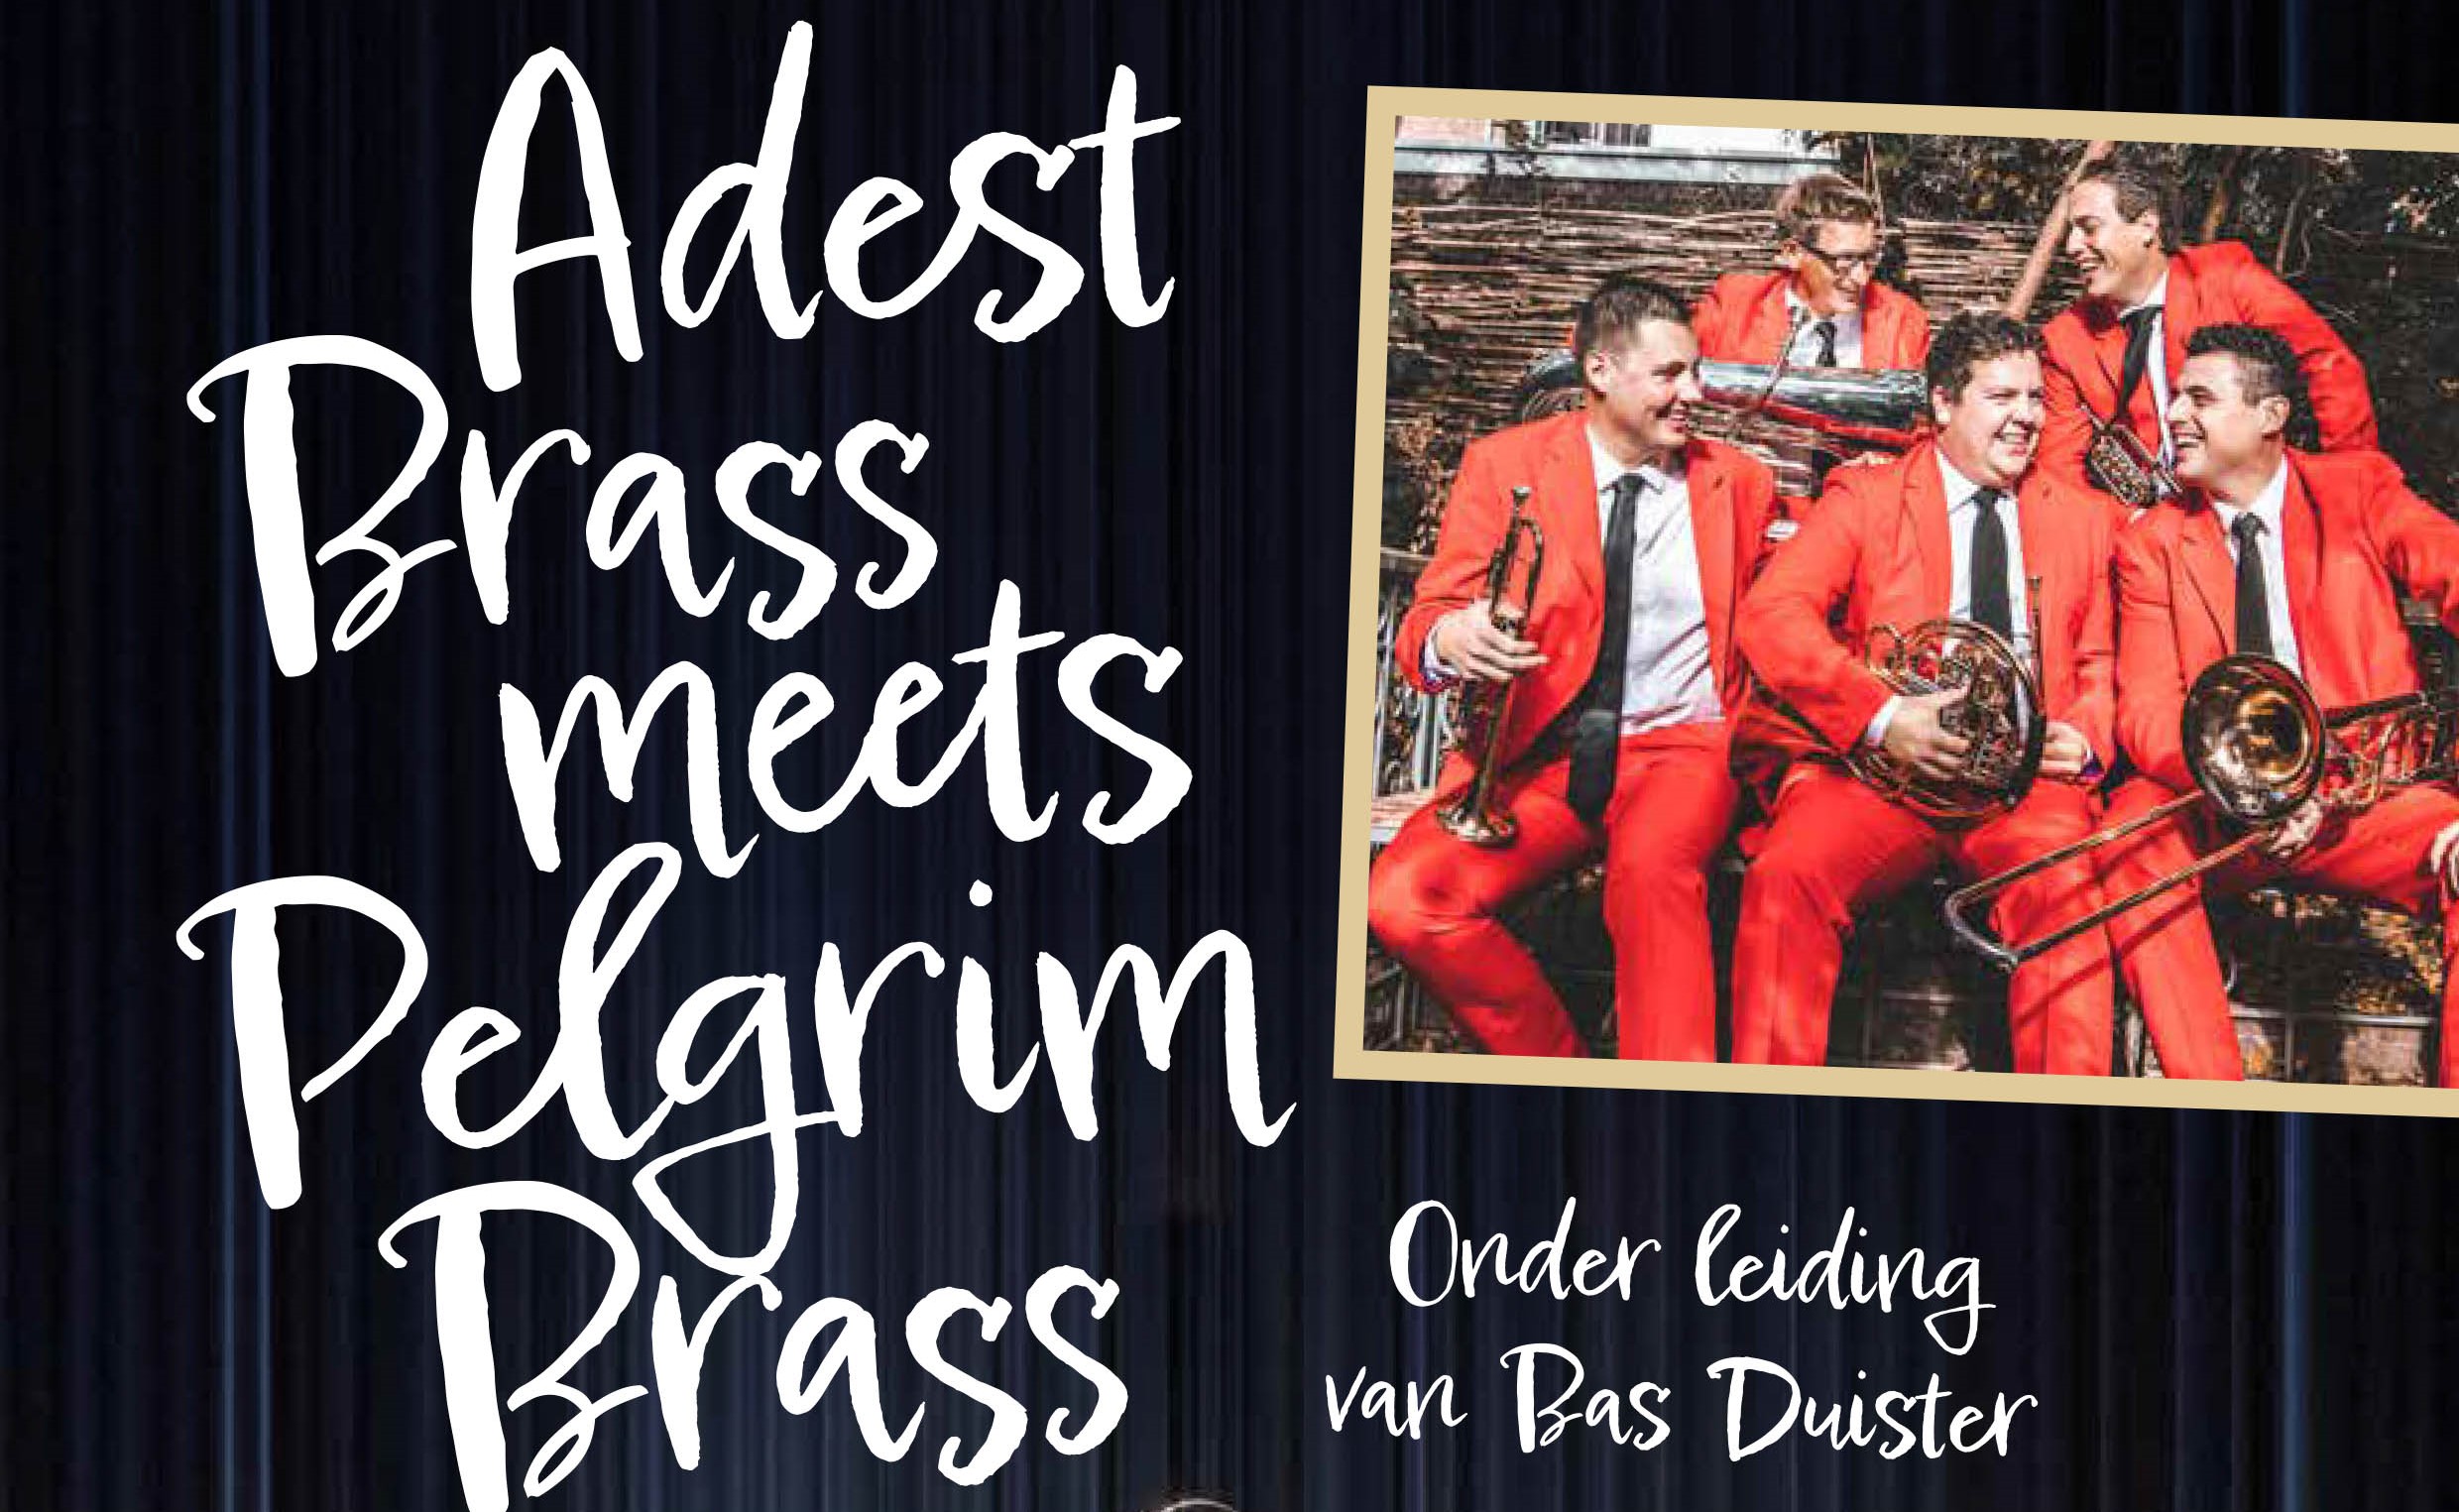 Concert Adest Brass meets Pelgrim Brass 13-11-’22